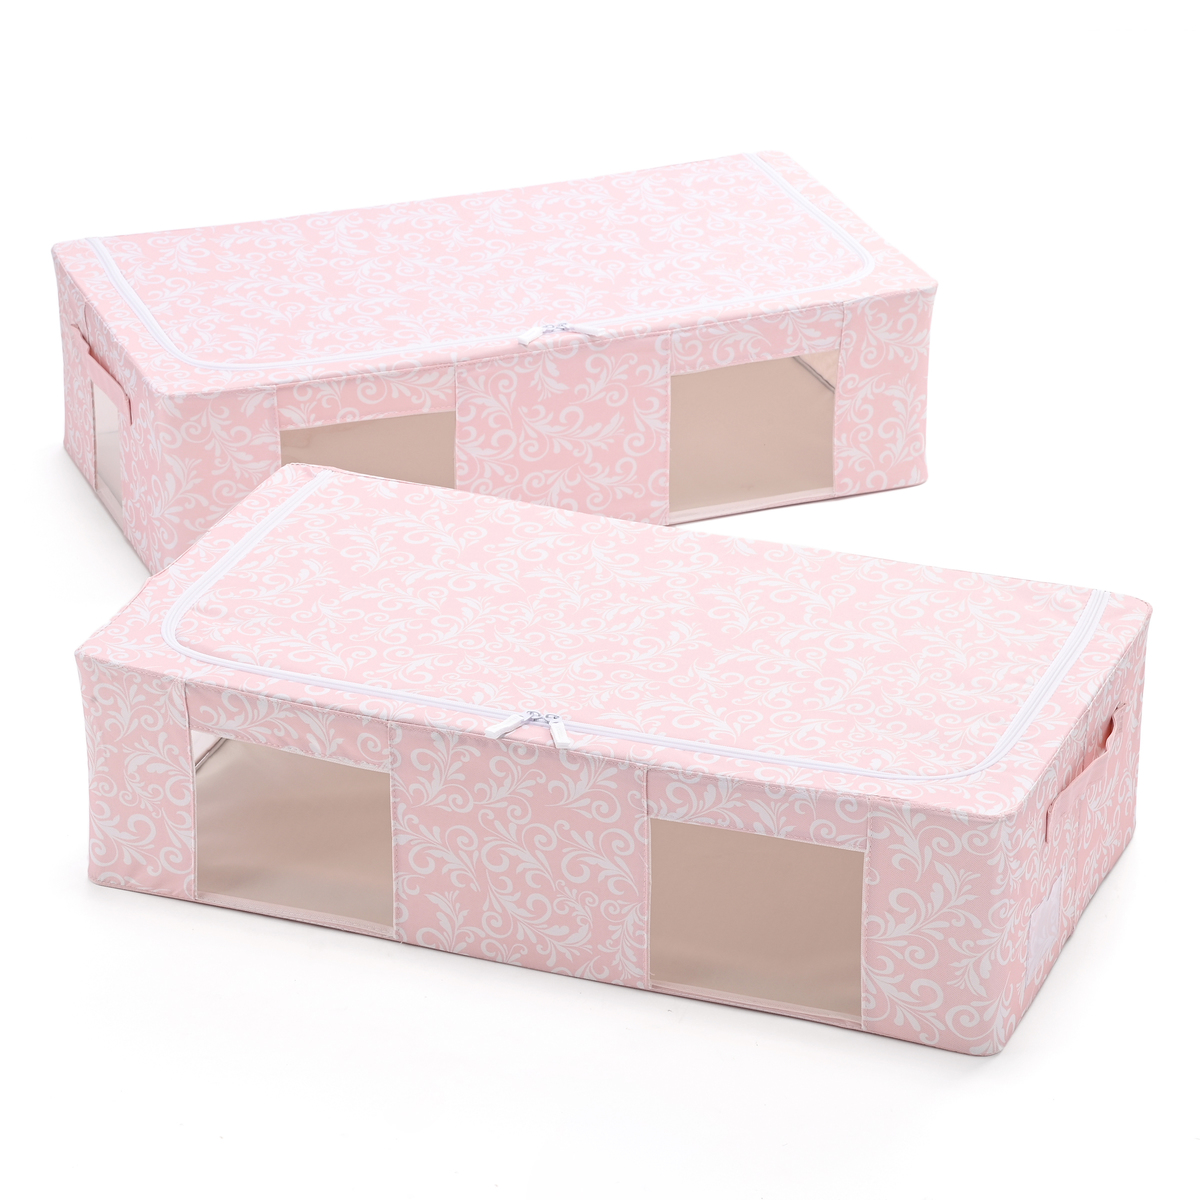  中身が見える窓付き収納BOXワイドサイズ同色2個  オーナメントピンク